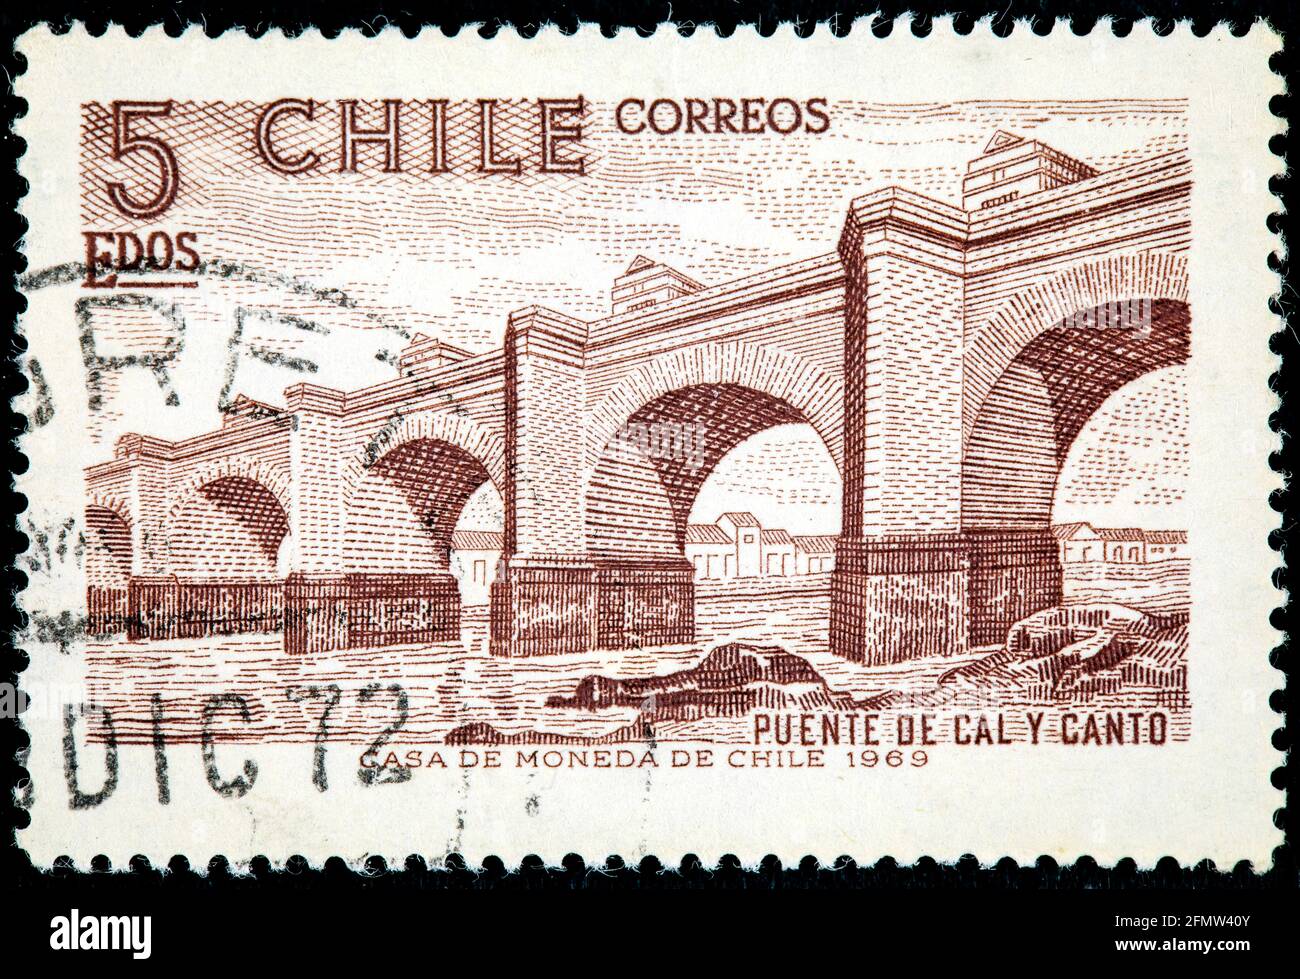 Chili - VERS 1969: Un timbre imprimé au Chili montre le premier grand pont Cal y Canto sur la rivière Mapocho, exploration et développement du Chili, vers 1969 Banque D'Images